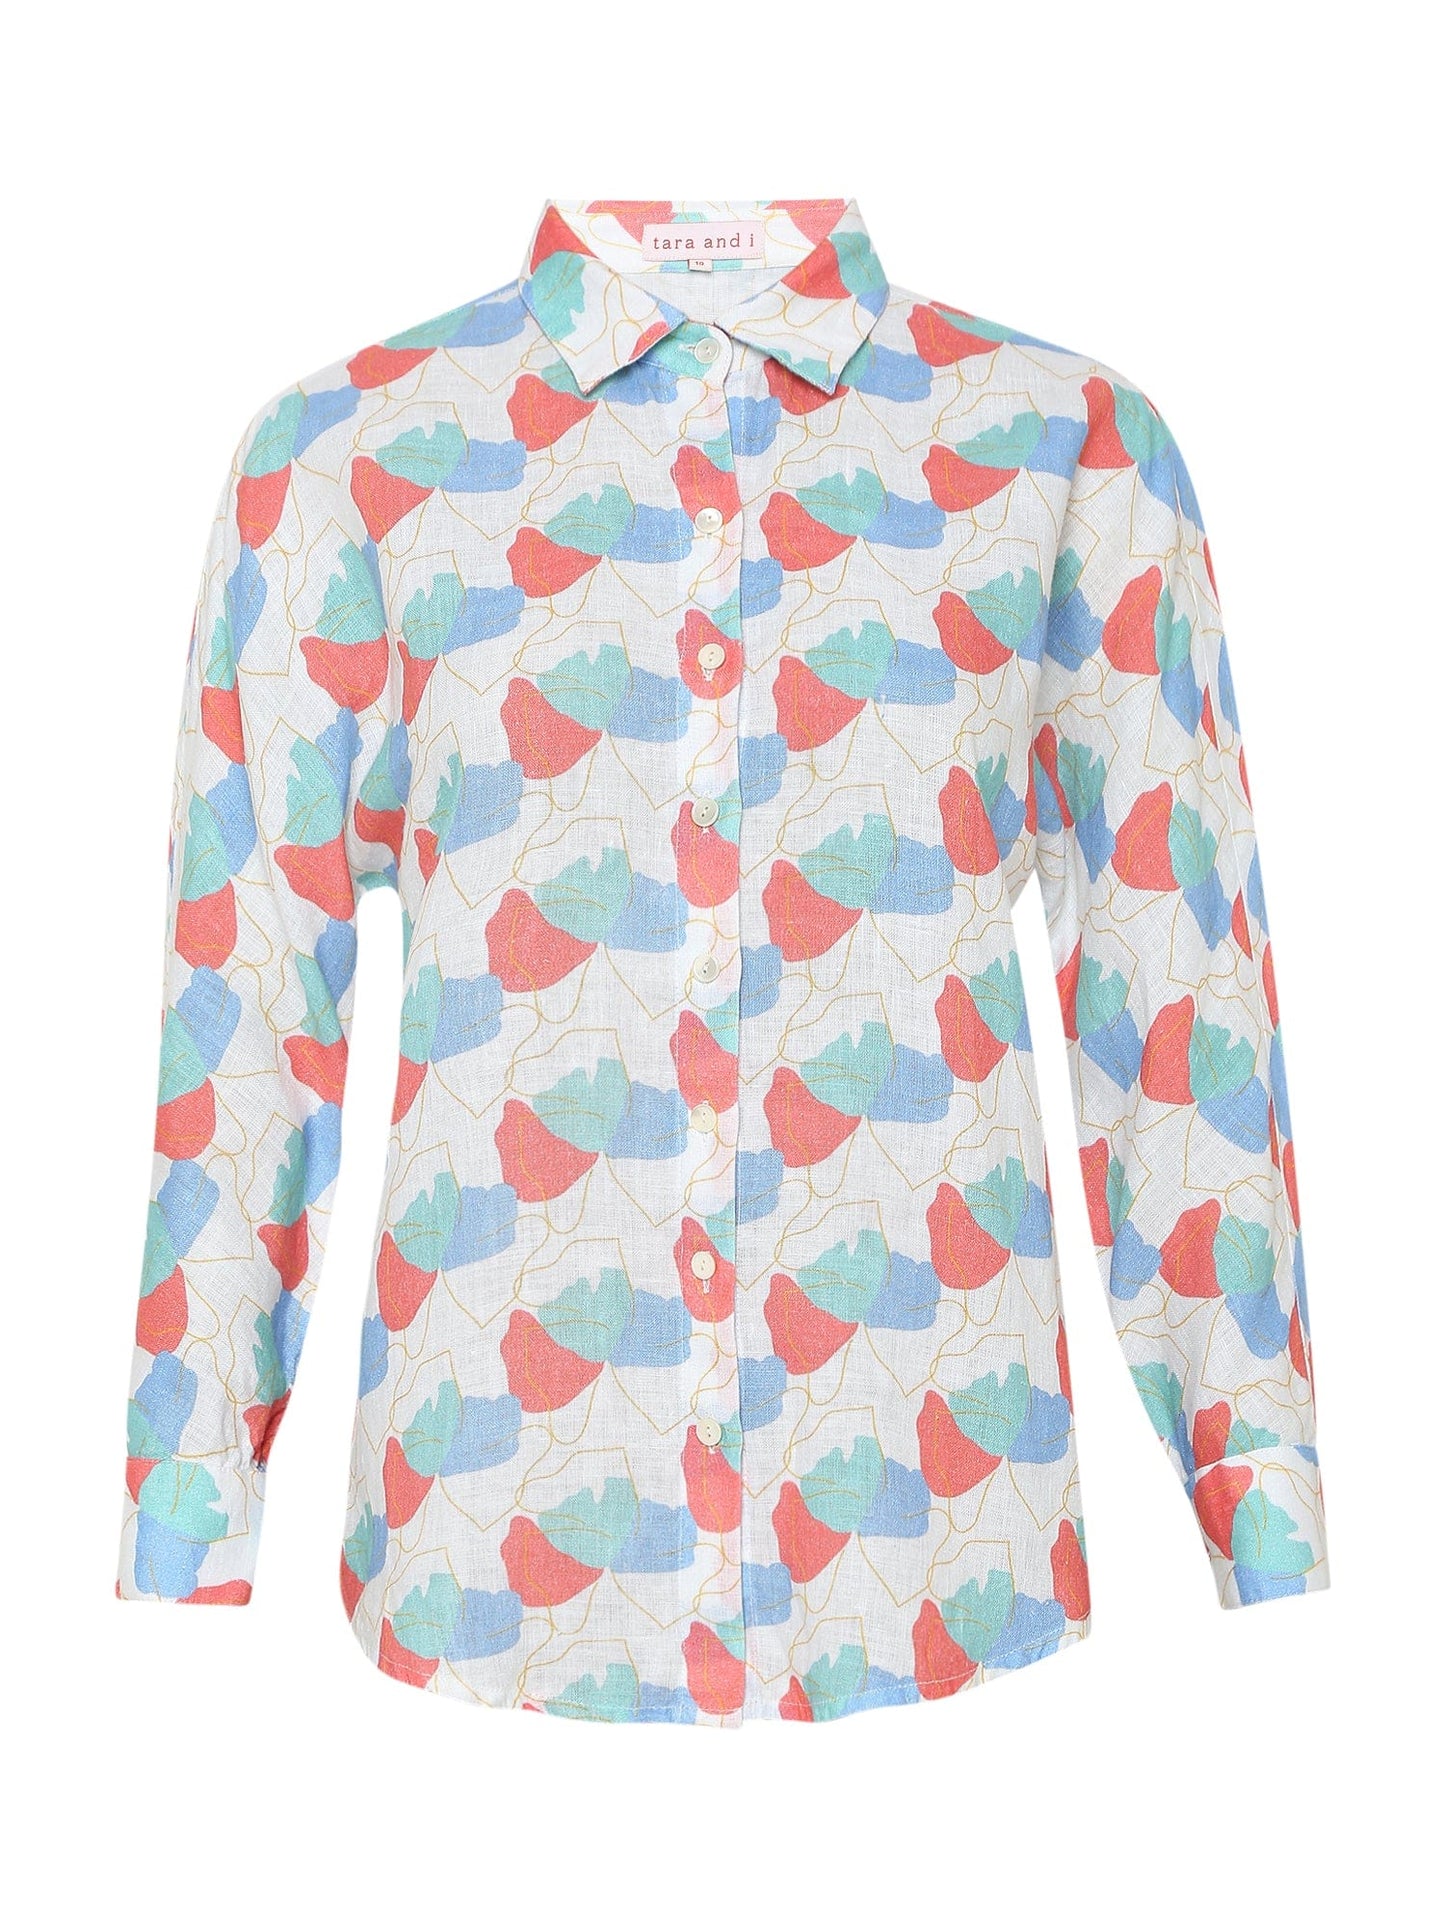 faraway floral printed shirt and shorts co-ord set